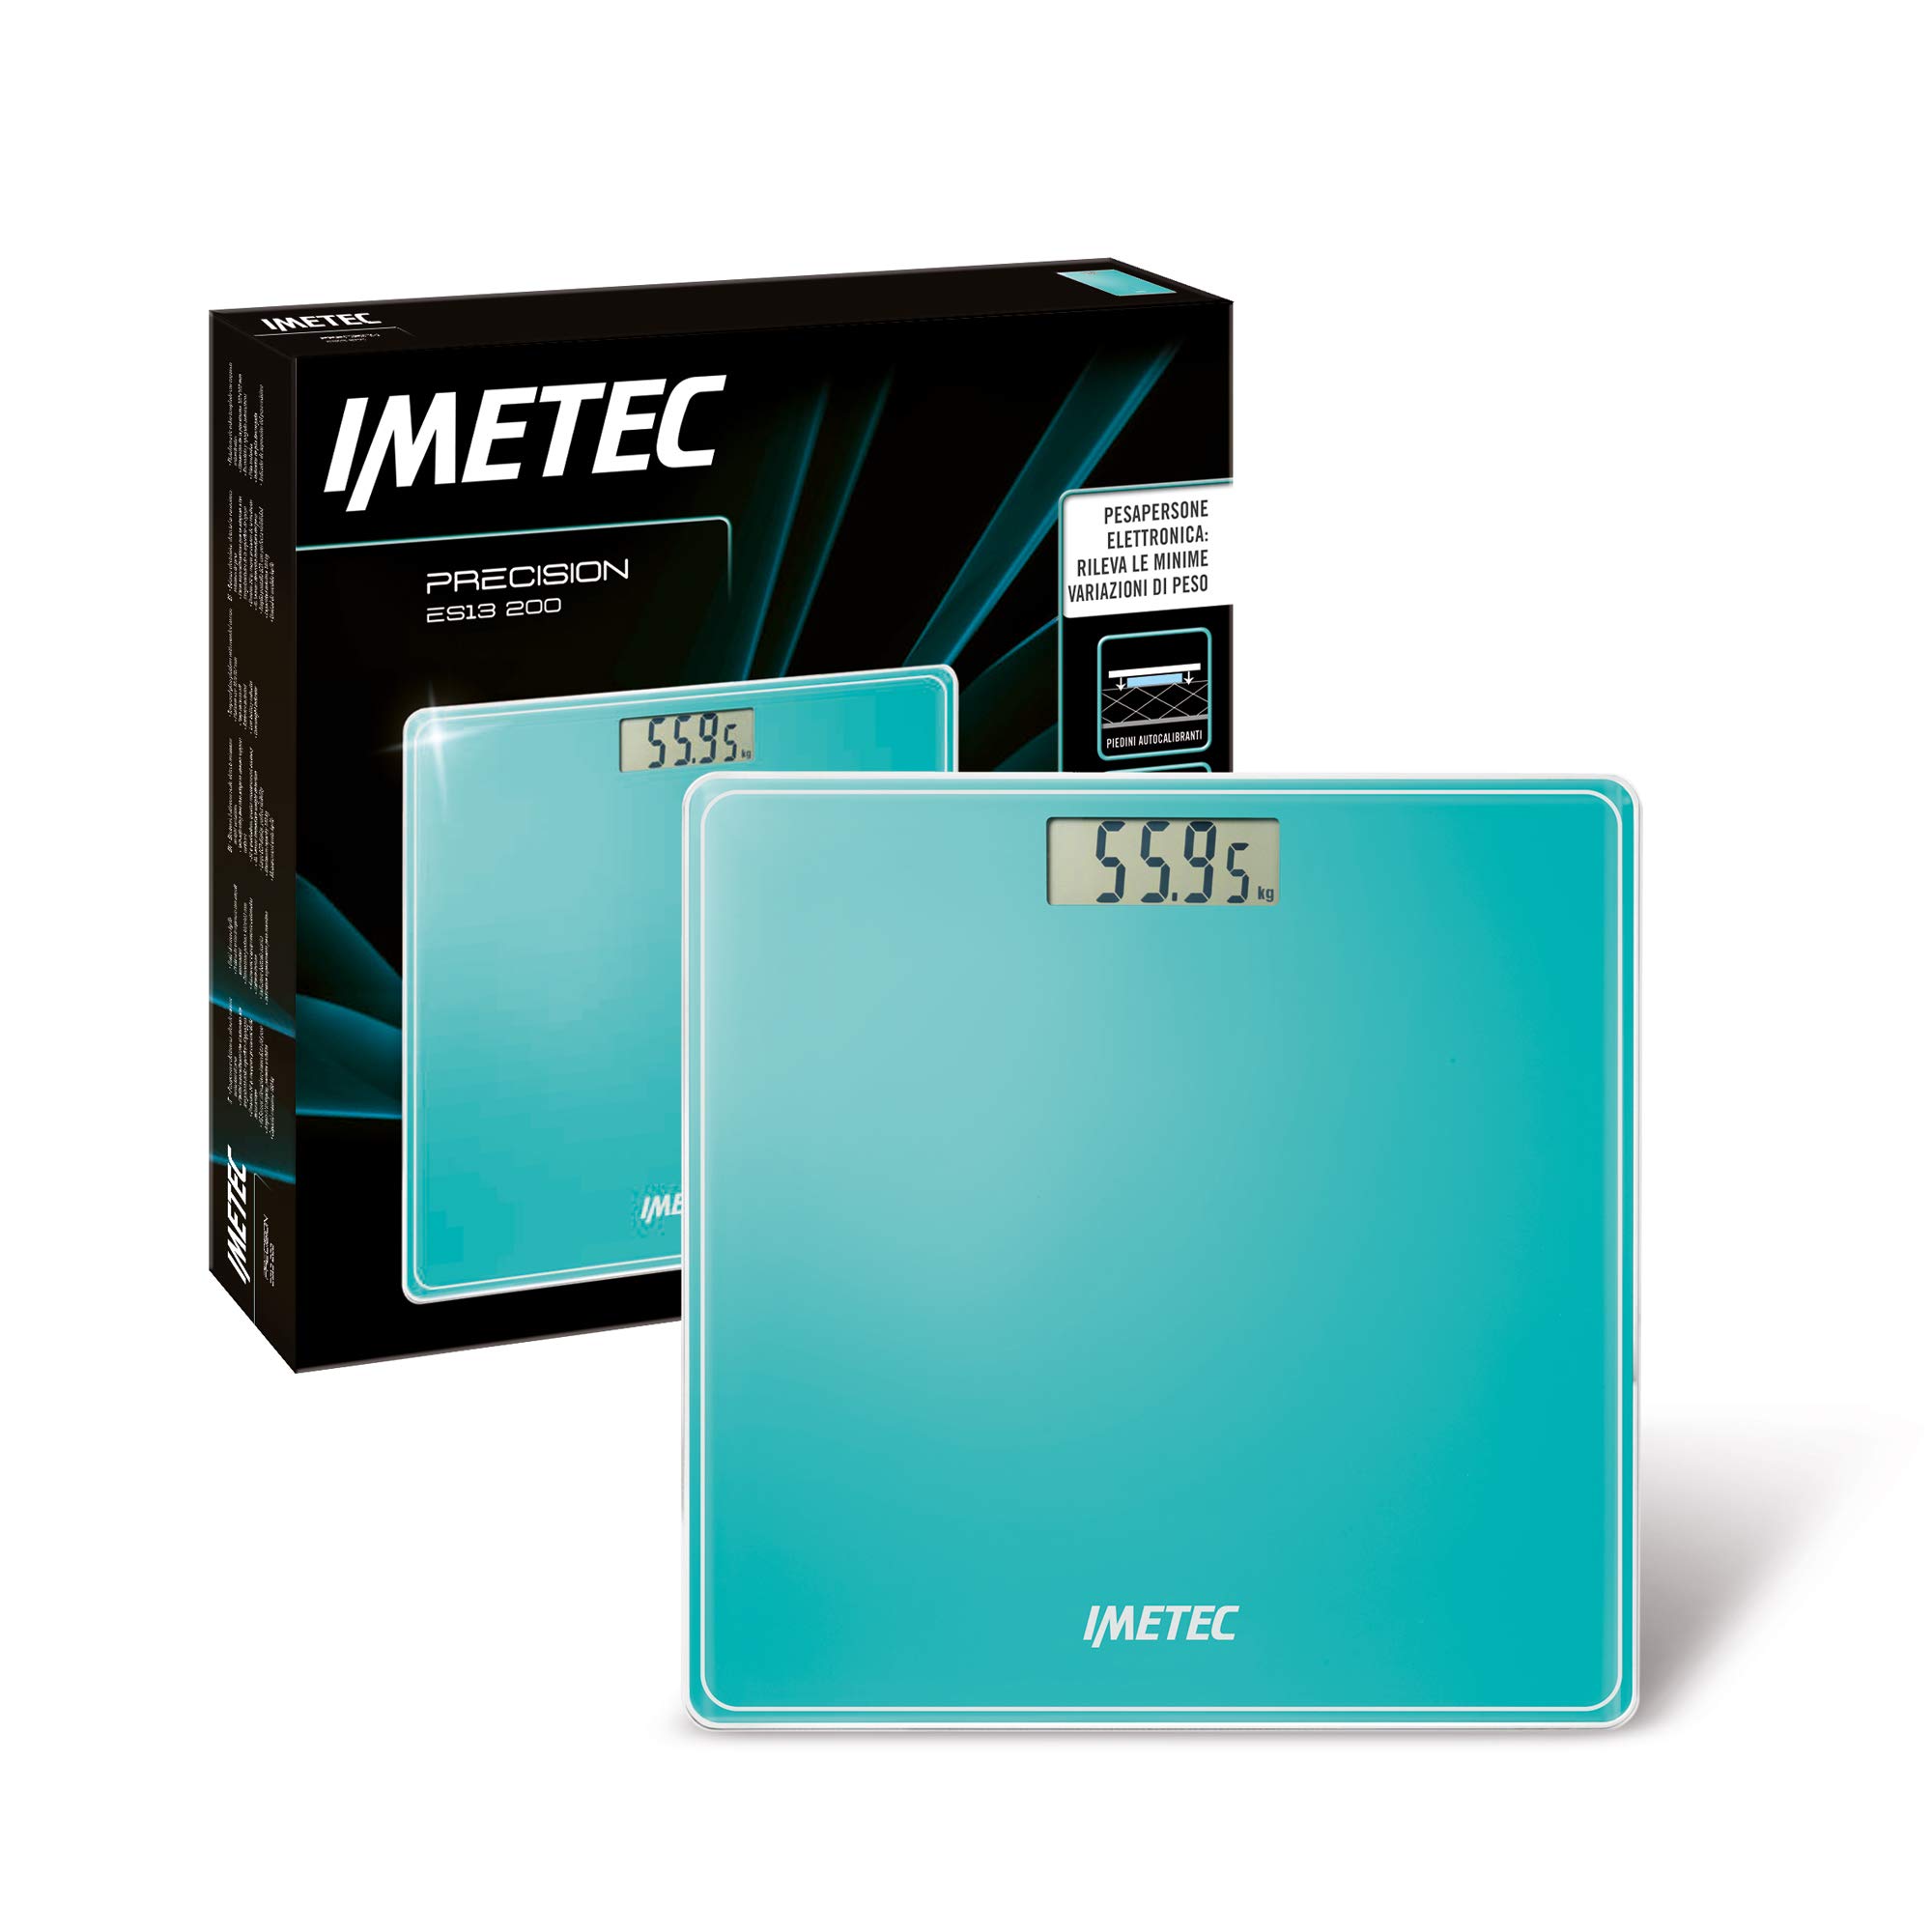 Imetec Precision ES13 200 Elektronische Personenwaage, zeigt minimale Gewichtsänderungen auf, bis zu 180 kg, LCD-Display, gehärtetes Glas, Batterien im Lieferumfang enthalten